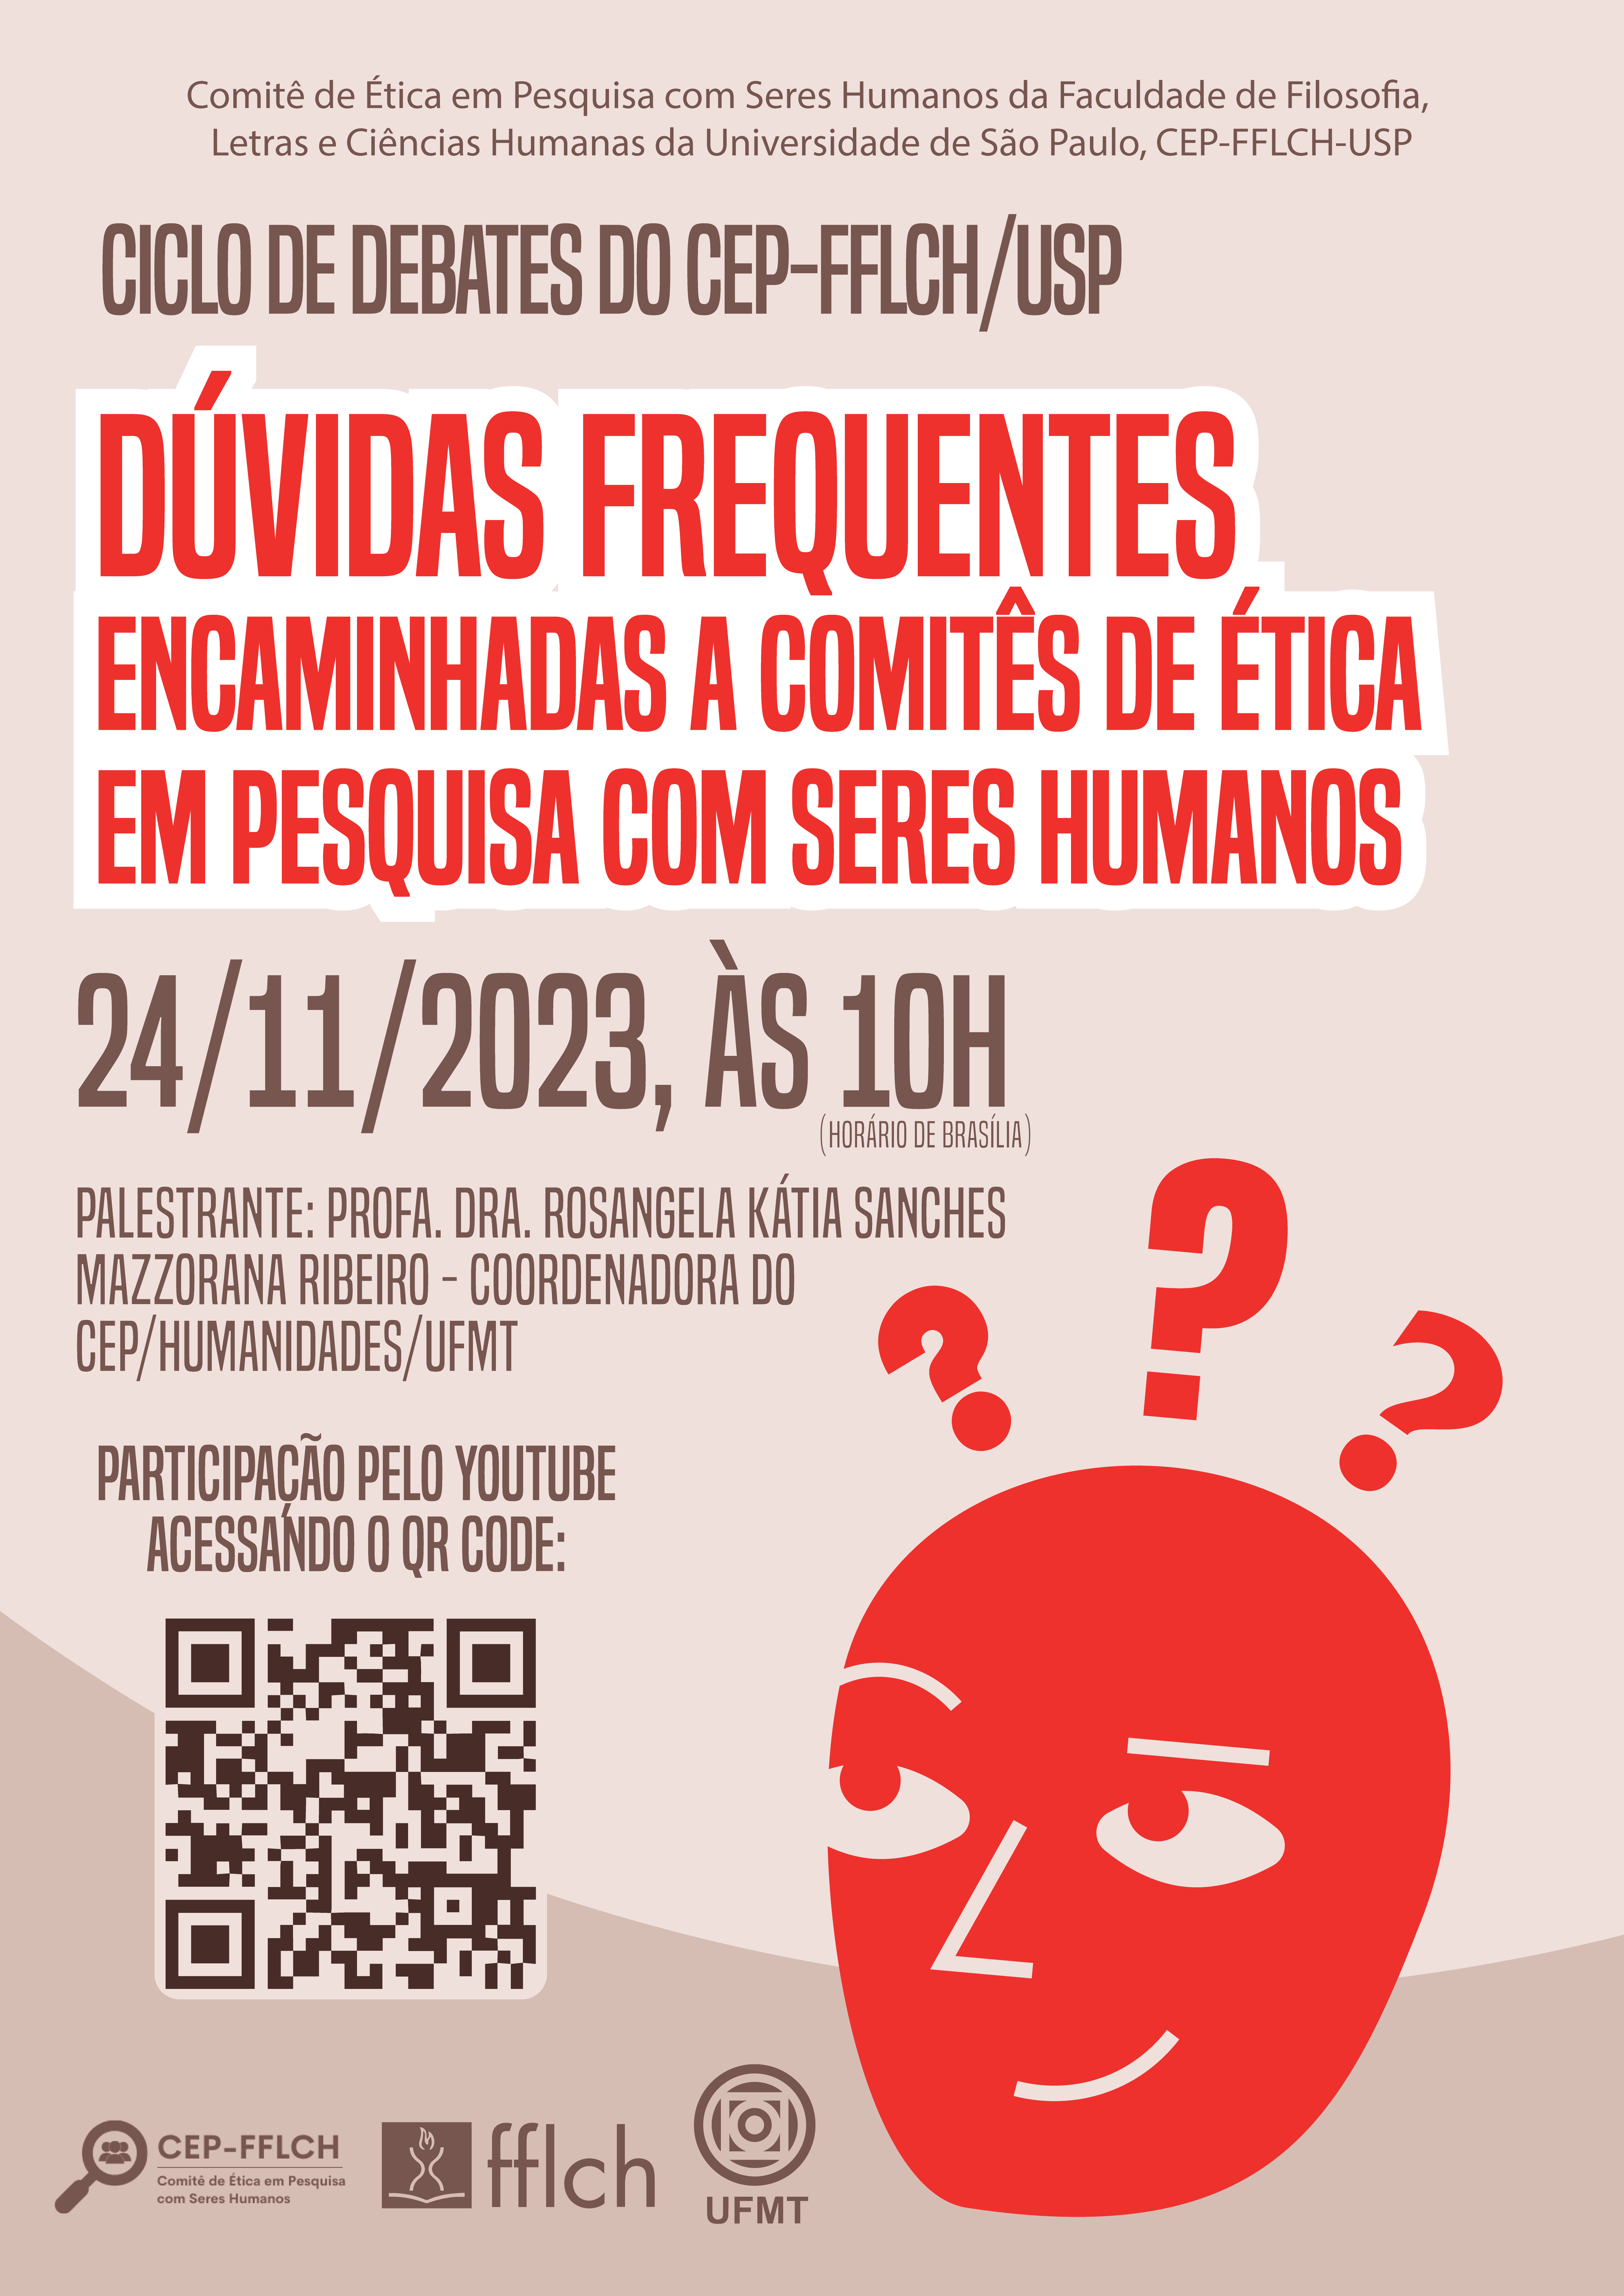 Ciclo de Debates do CEP-FFLCH/USP, 24 de novembro, às 10h (horário de Brasília), com o tema "Dúvidas frequentes encaminhadas a Comitês de Ética em Pesquisa com Seres Humanos" -  Palestrante: Profa. Dra. Rosangela Kátia Sanches Mazzorana Ribeiro, Coordenadora do CEP/Humanidades/UFMT -  Link para participar: https://youtube.com/live/TtQhZQpeHuU  